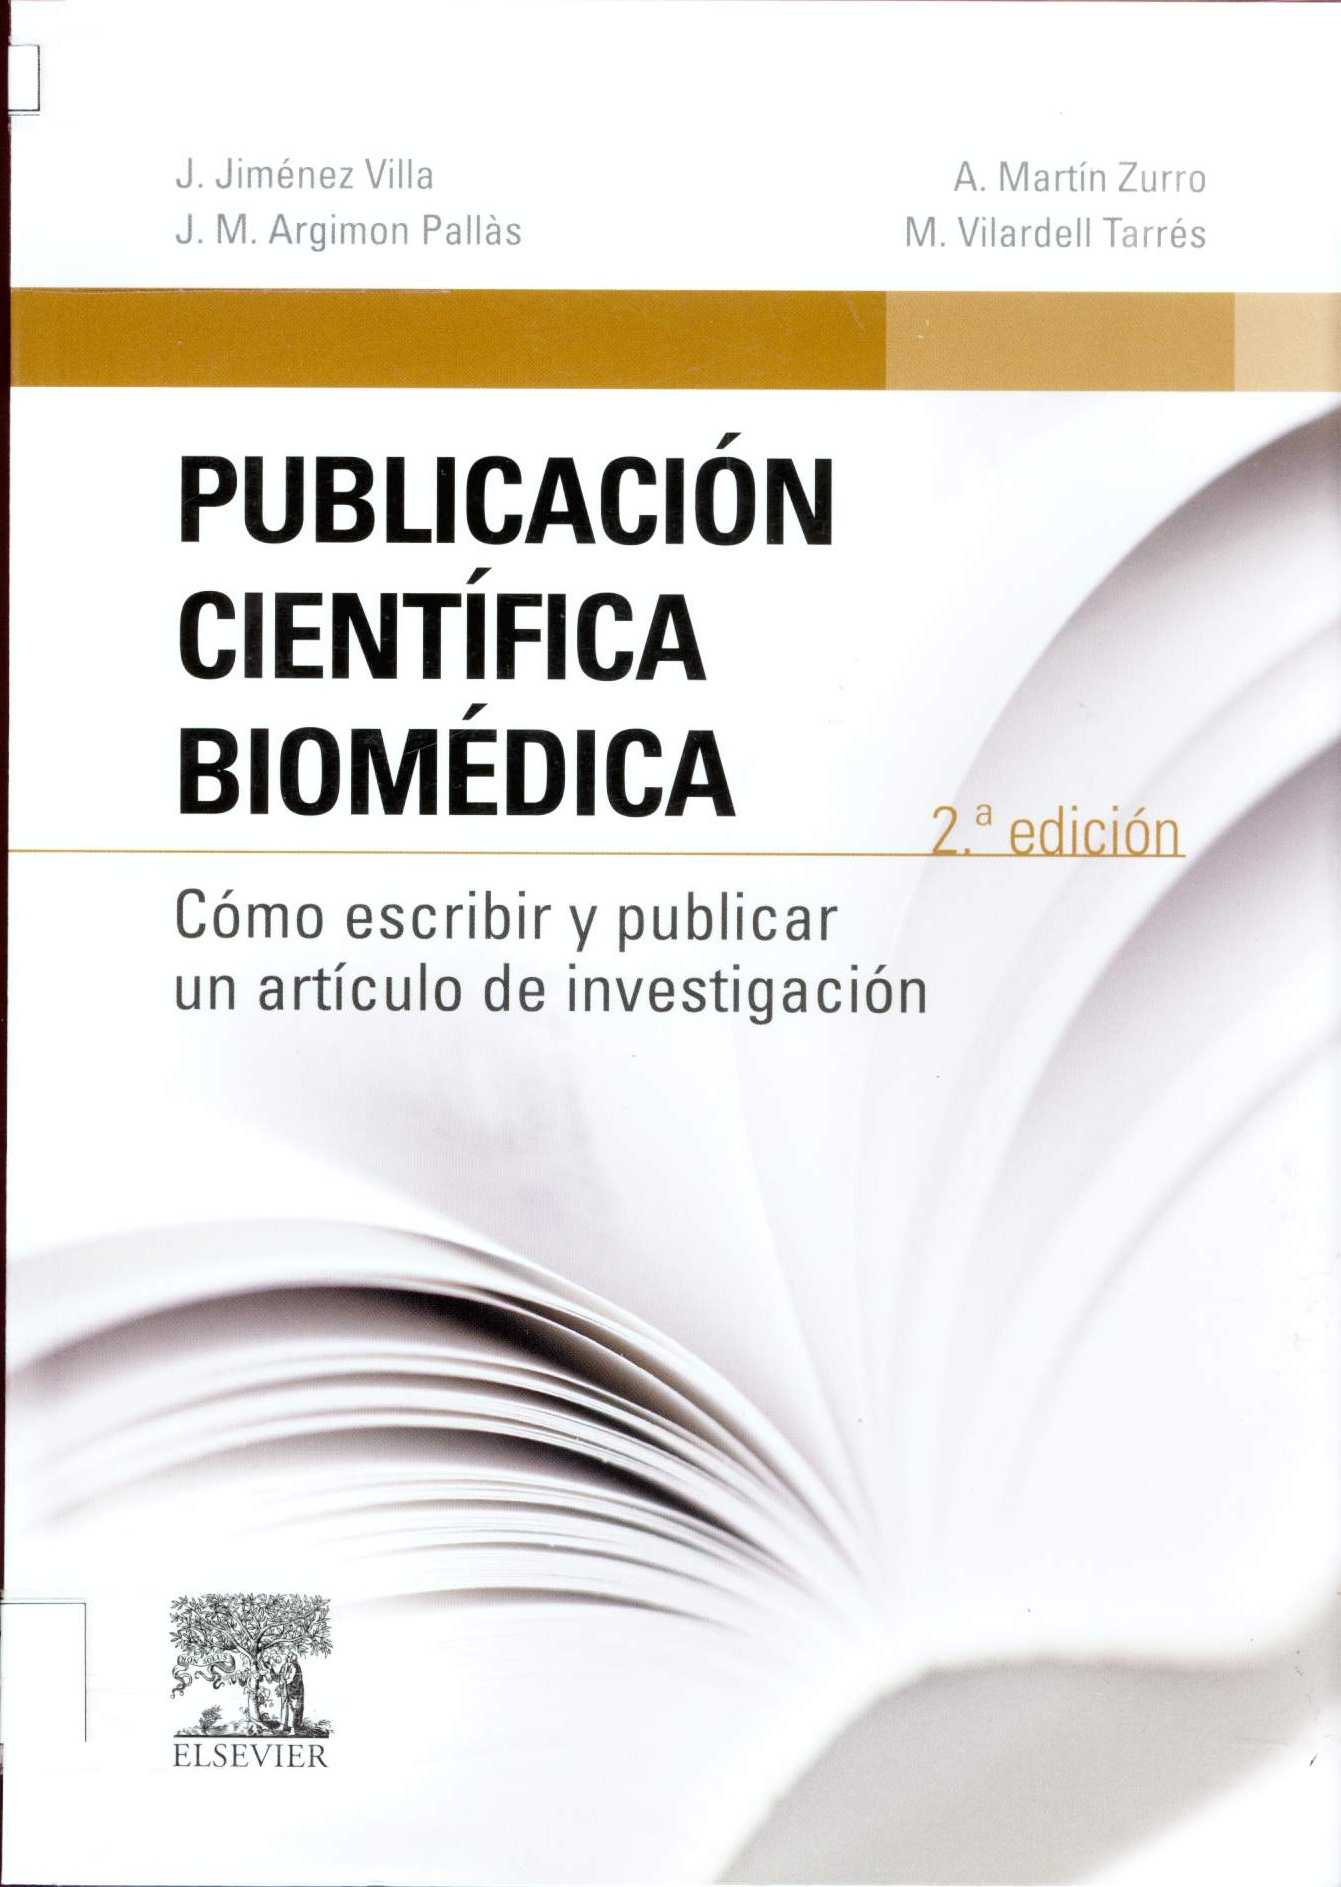 PUBLICACION CIENTIFICA BIOMEDICA COMO ESCRIBIR Y PUBLICAR UN ARTICULO DE INVESTIGACION